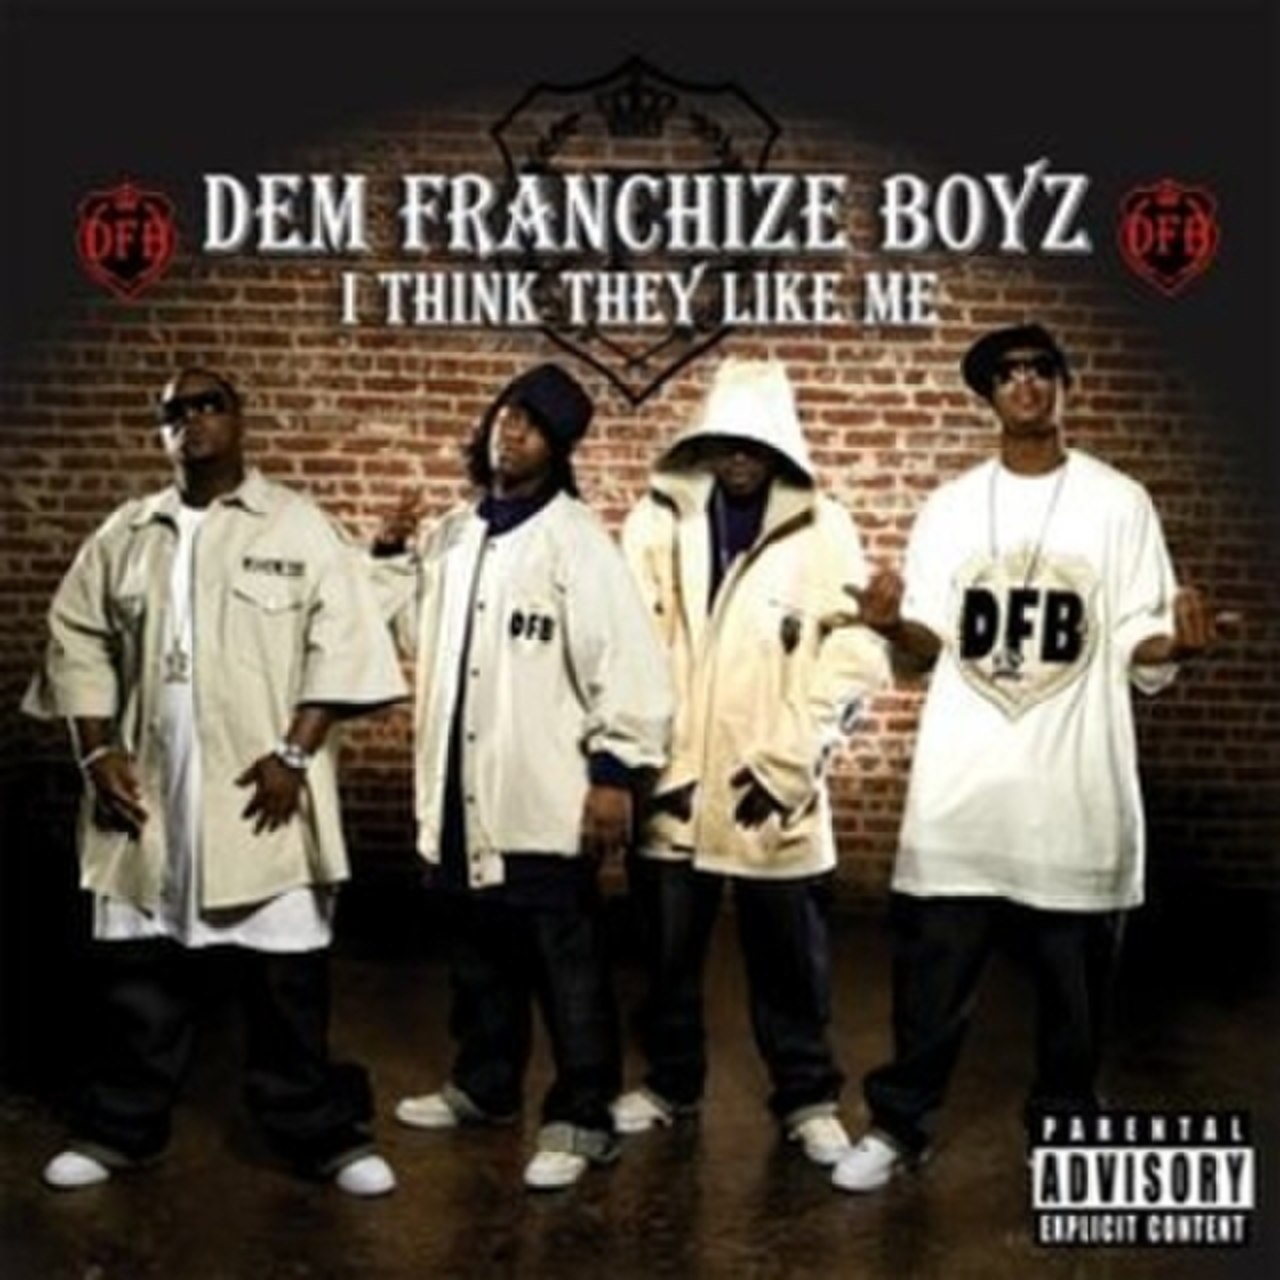 Dem Franchize Boyz – I Think They Like Me (ft. Jermaine Dupri, Da Brat & Bow Wow)